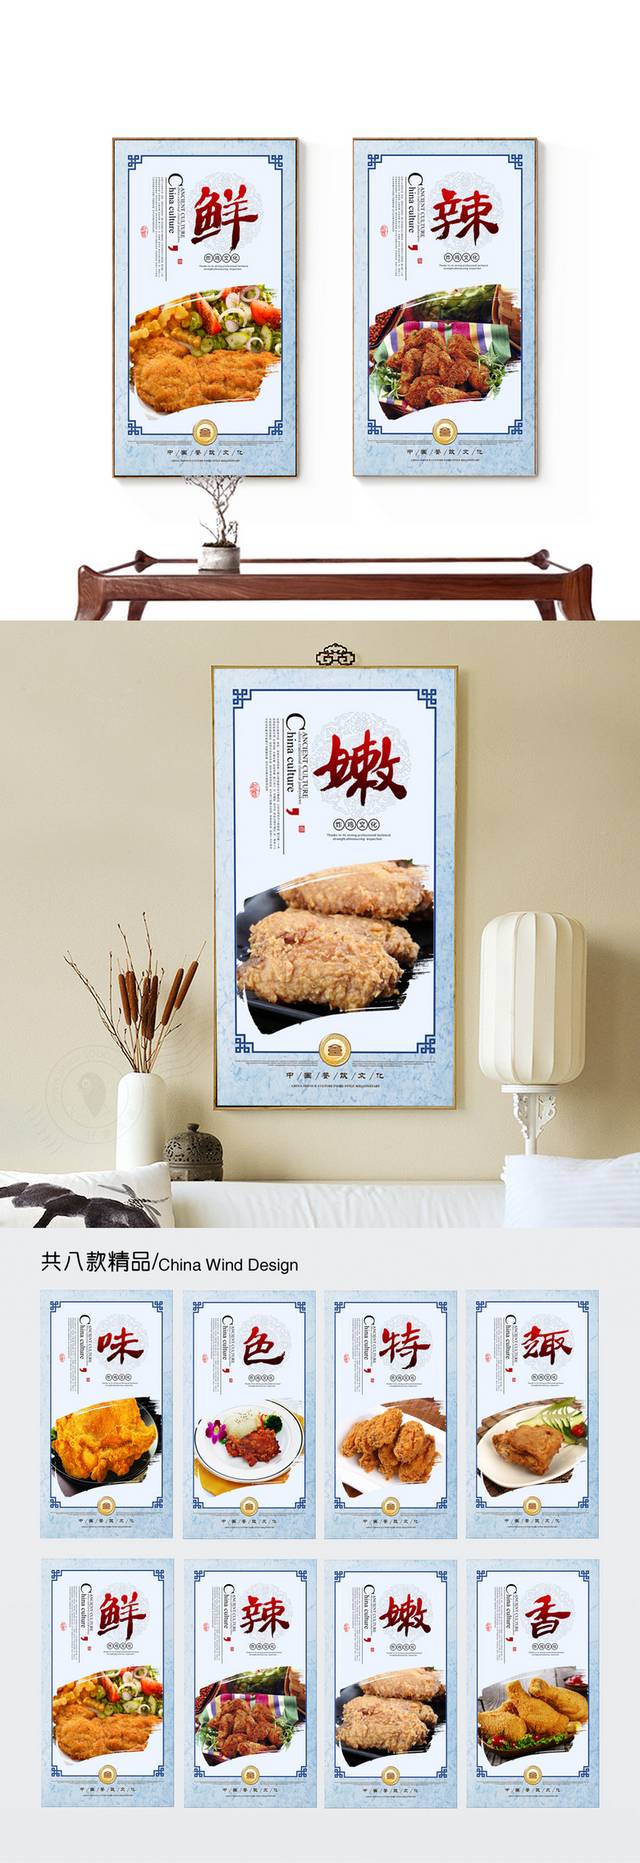 炸鸡餐饮文化宣传展板设计